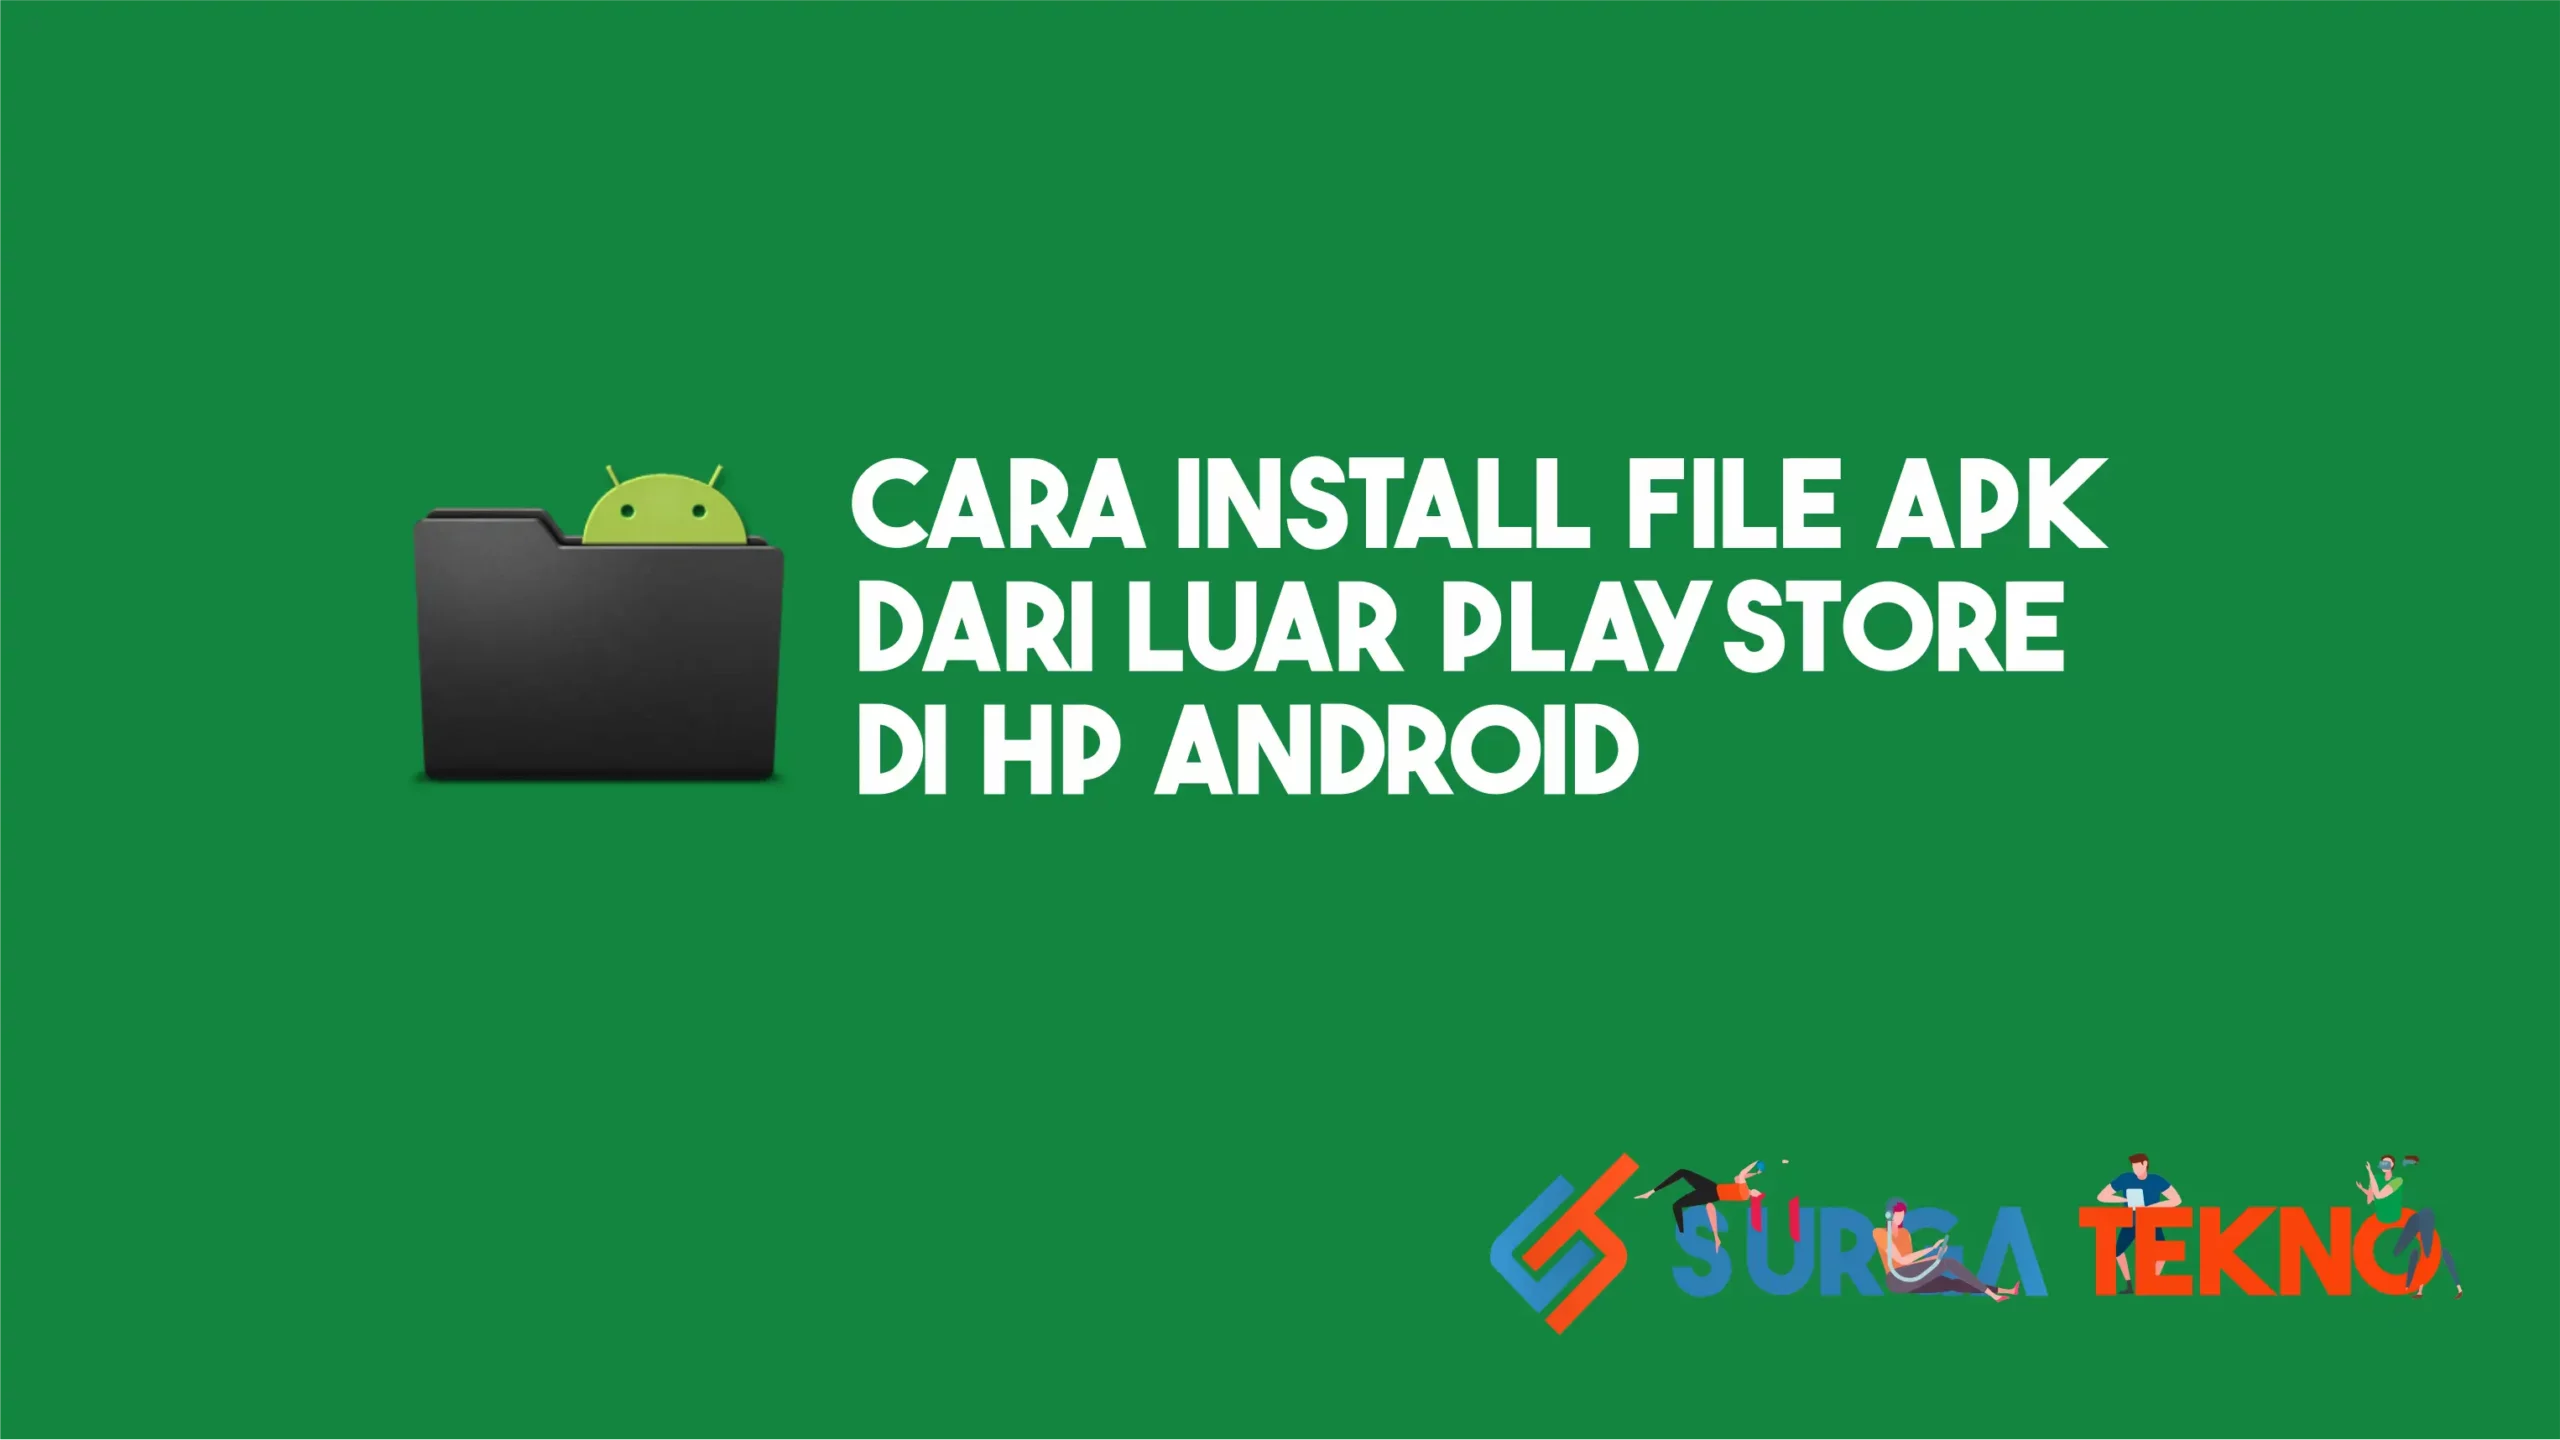 Cara Install File APK dari Luar Playstore di HP Android